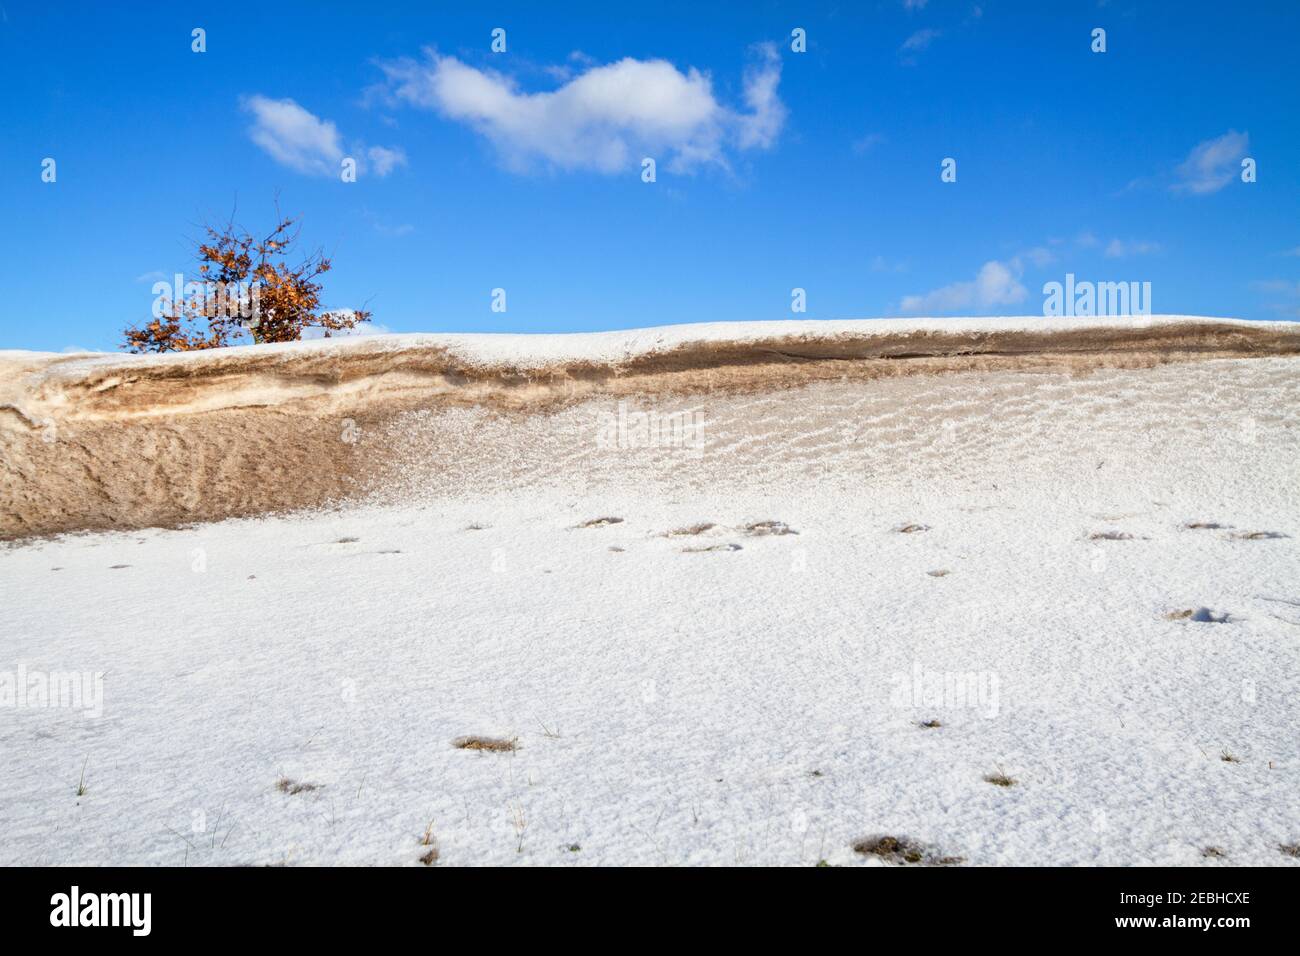 Snowdrift, un dépôt de neige et un peu de sable sculptés par le vent dans un monticule pendant une tempête de neige Banque D'Images